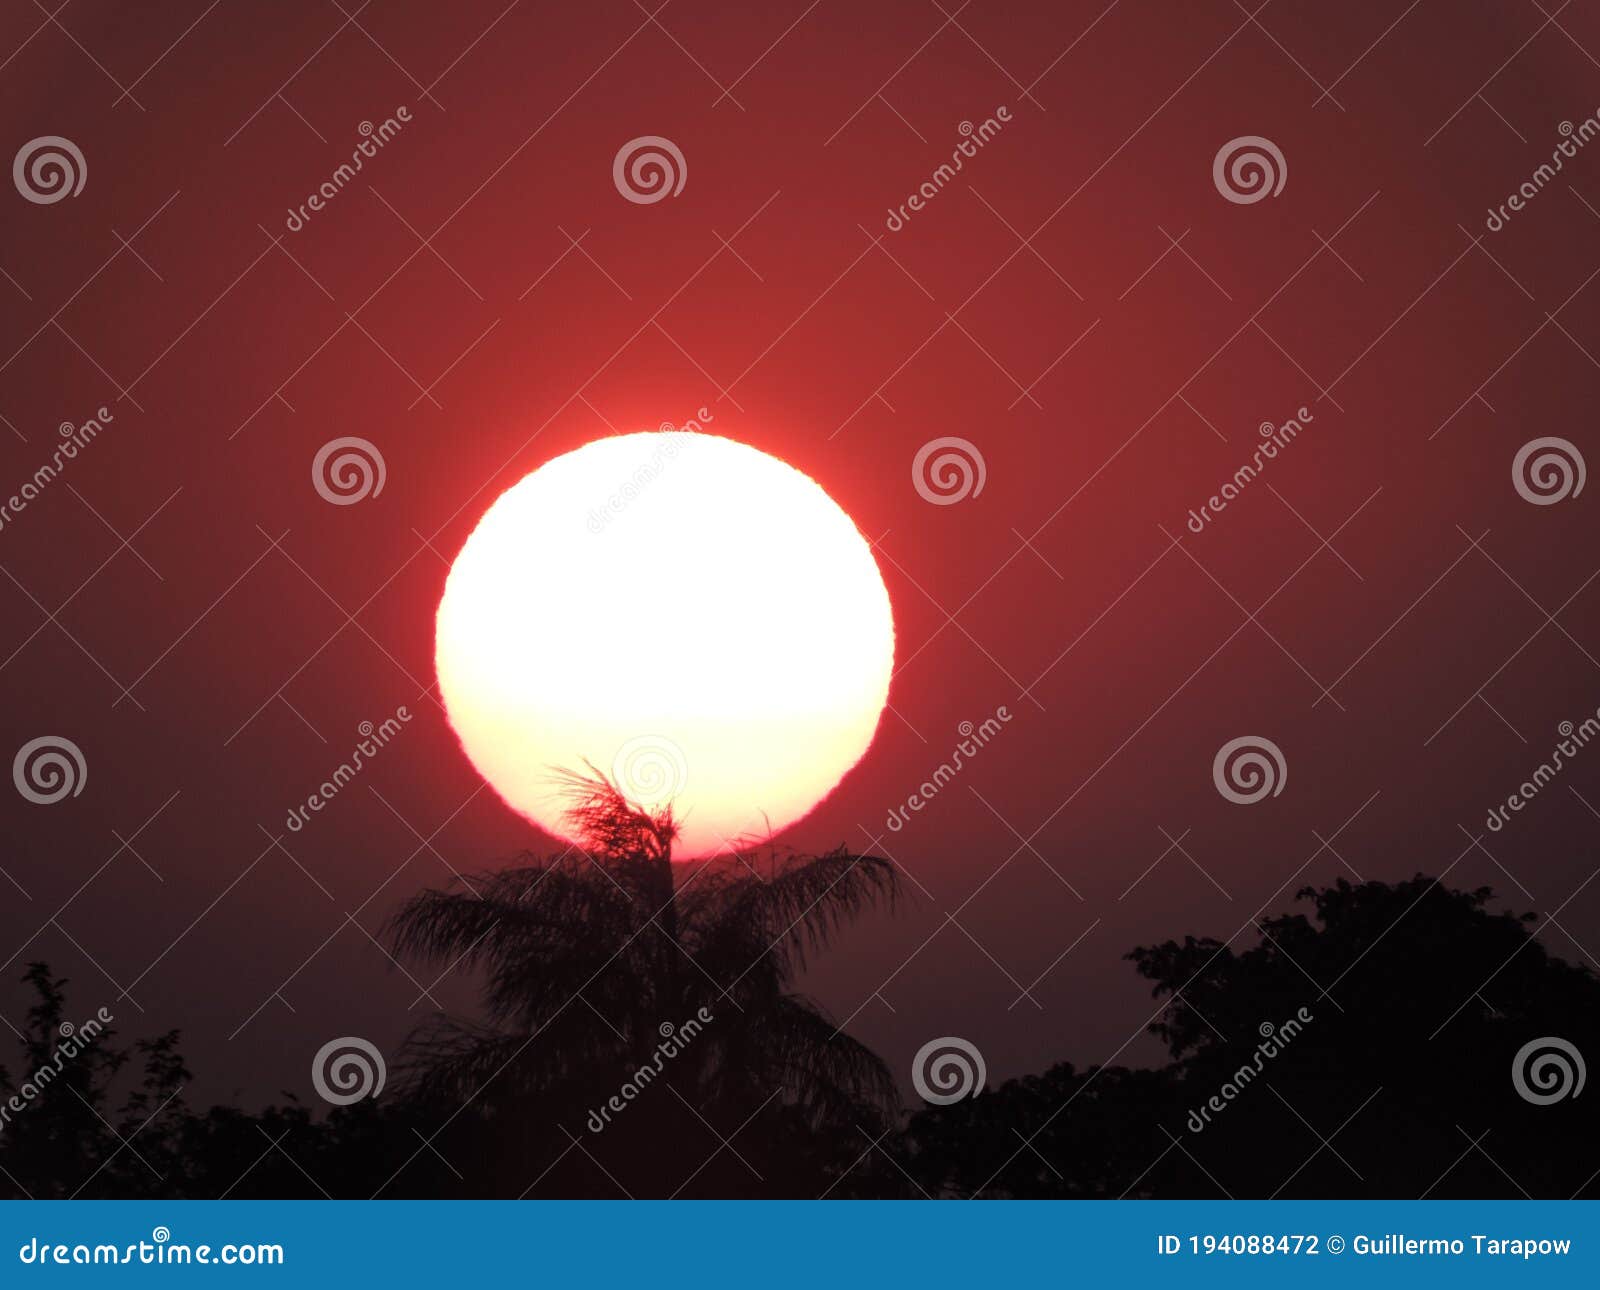 ocaso caluroso, puesta de sol en la hidrovia paraguay parana